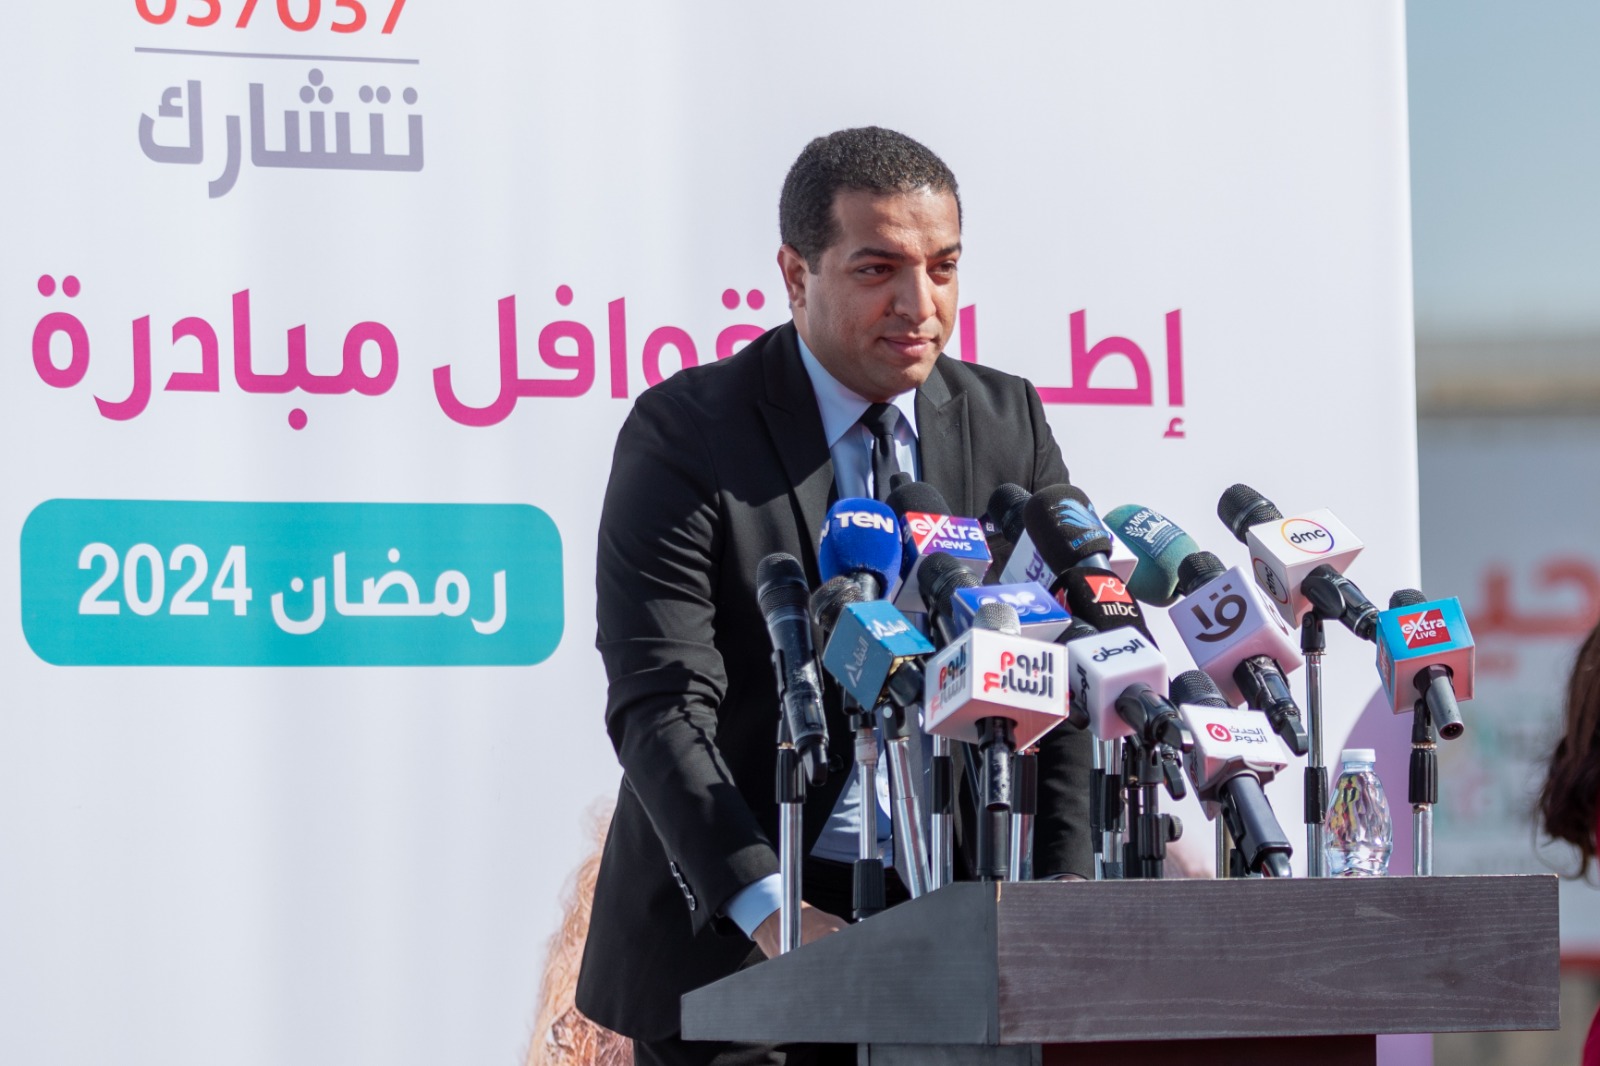 صندوق تحيا مصر يطلق قوافل "أبواب الخير" لرعاية 5 ملايين مواطن بكافة المحافظات